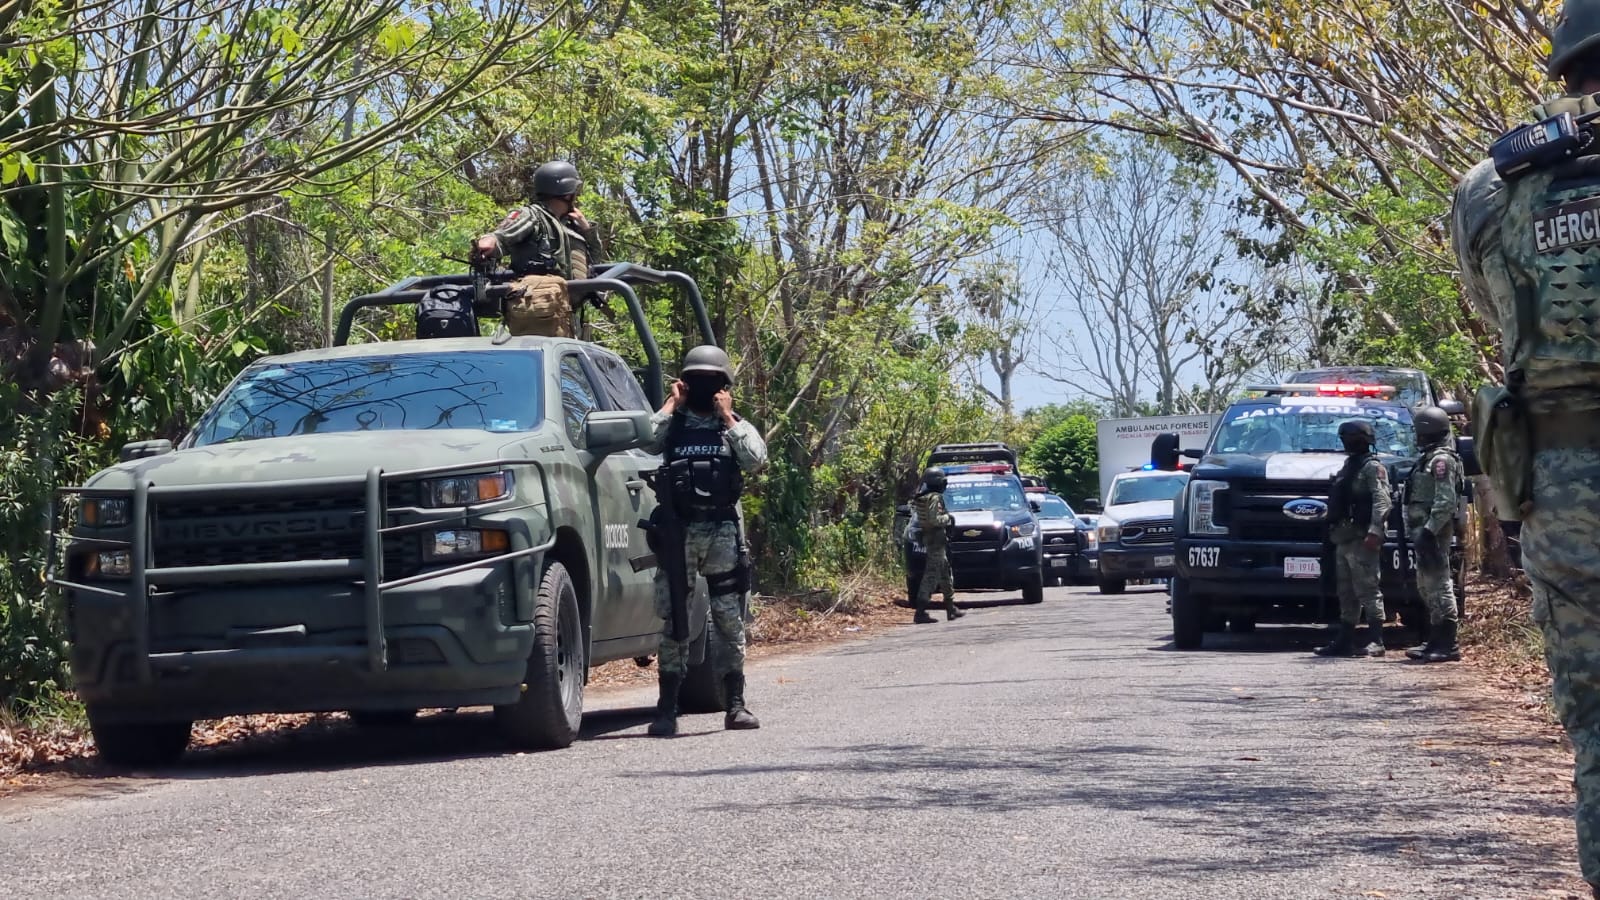 Ejército en ranchería San Marcos del municipio de Jalapa. Foto tomada de: POSTA